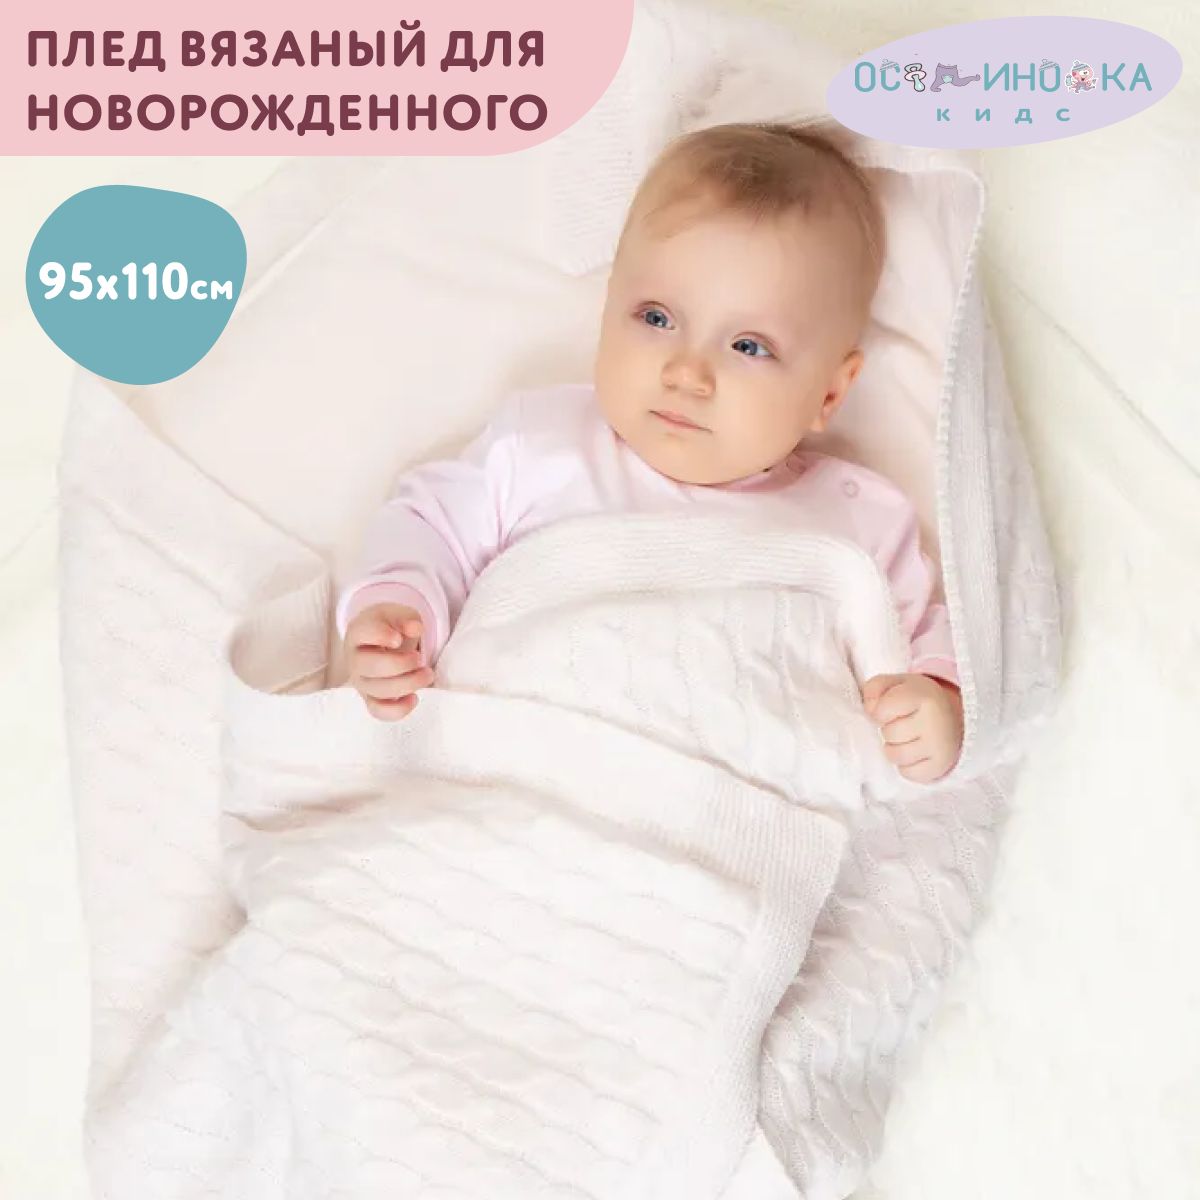 Одеяло для новорожденного сатин LoveBabyToys * | Купить в Piccolo СПб